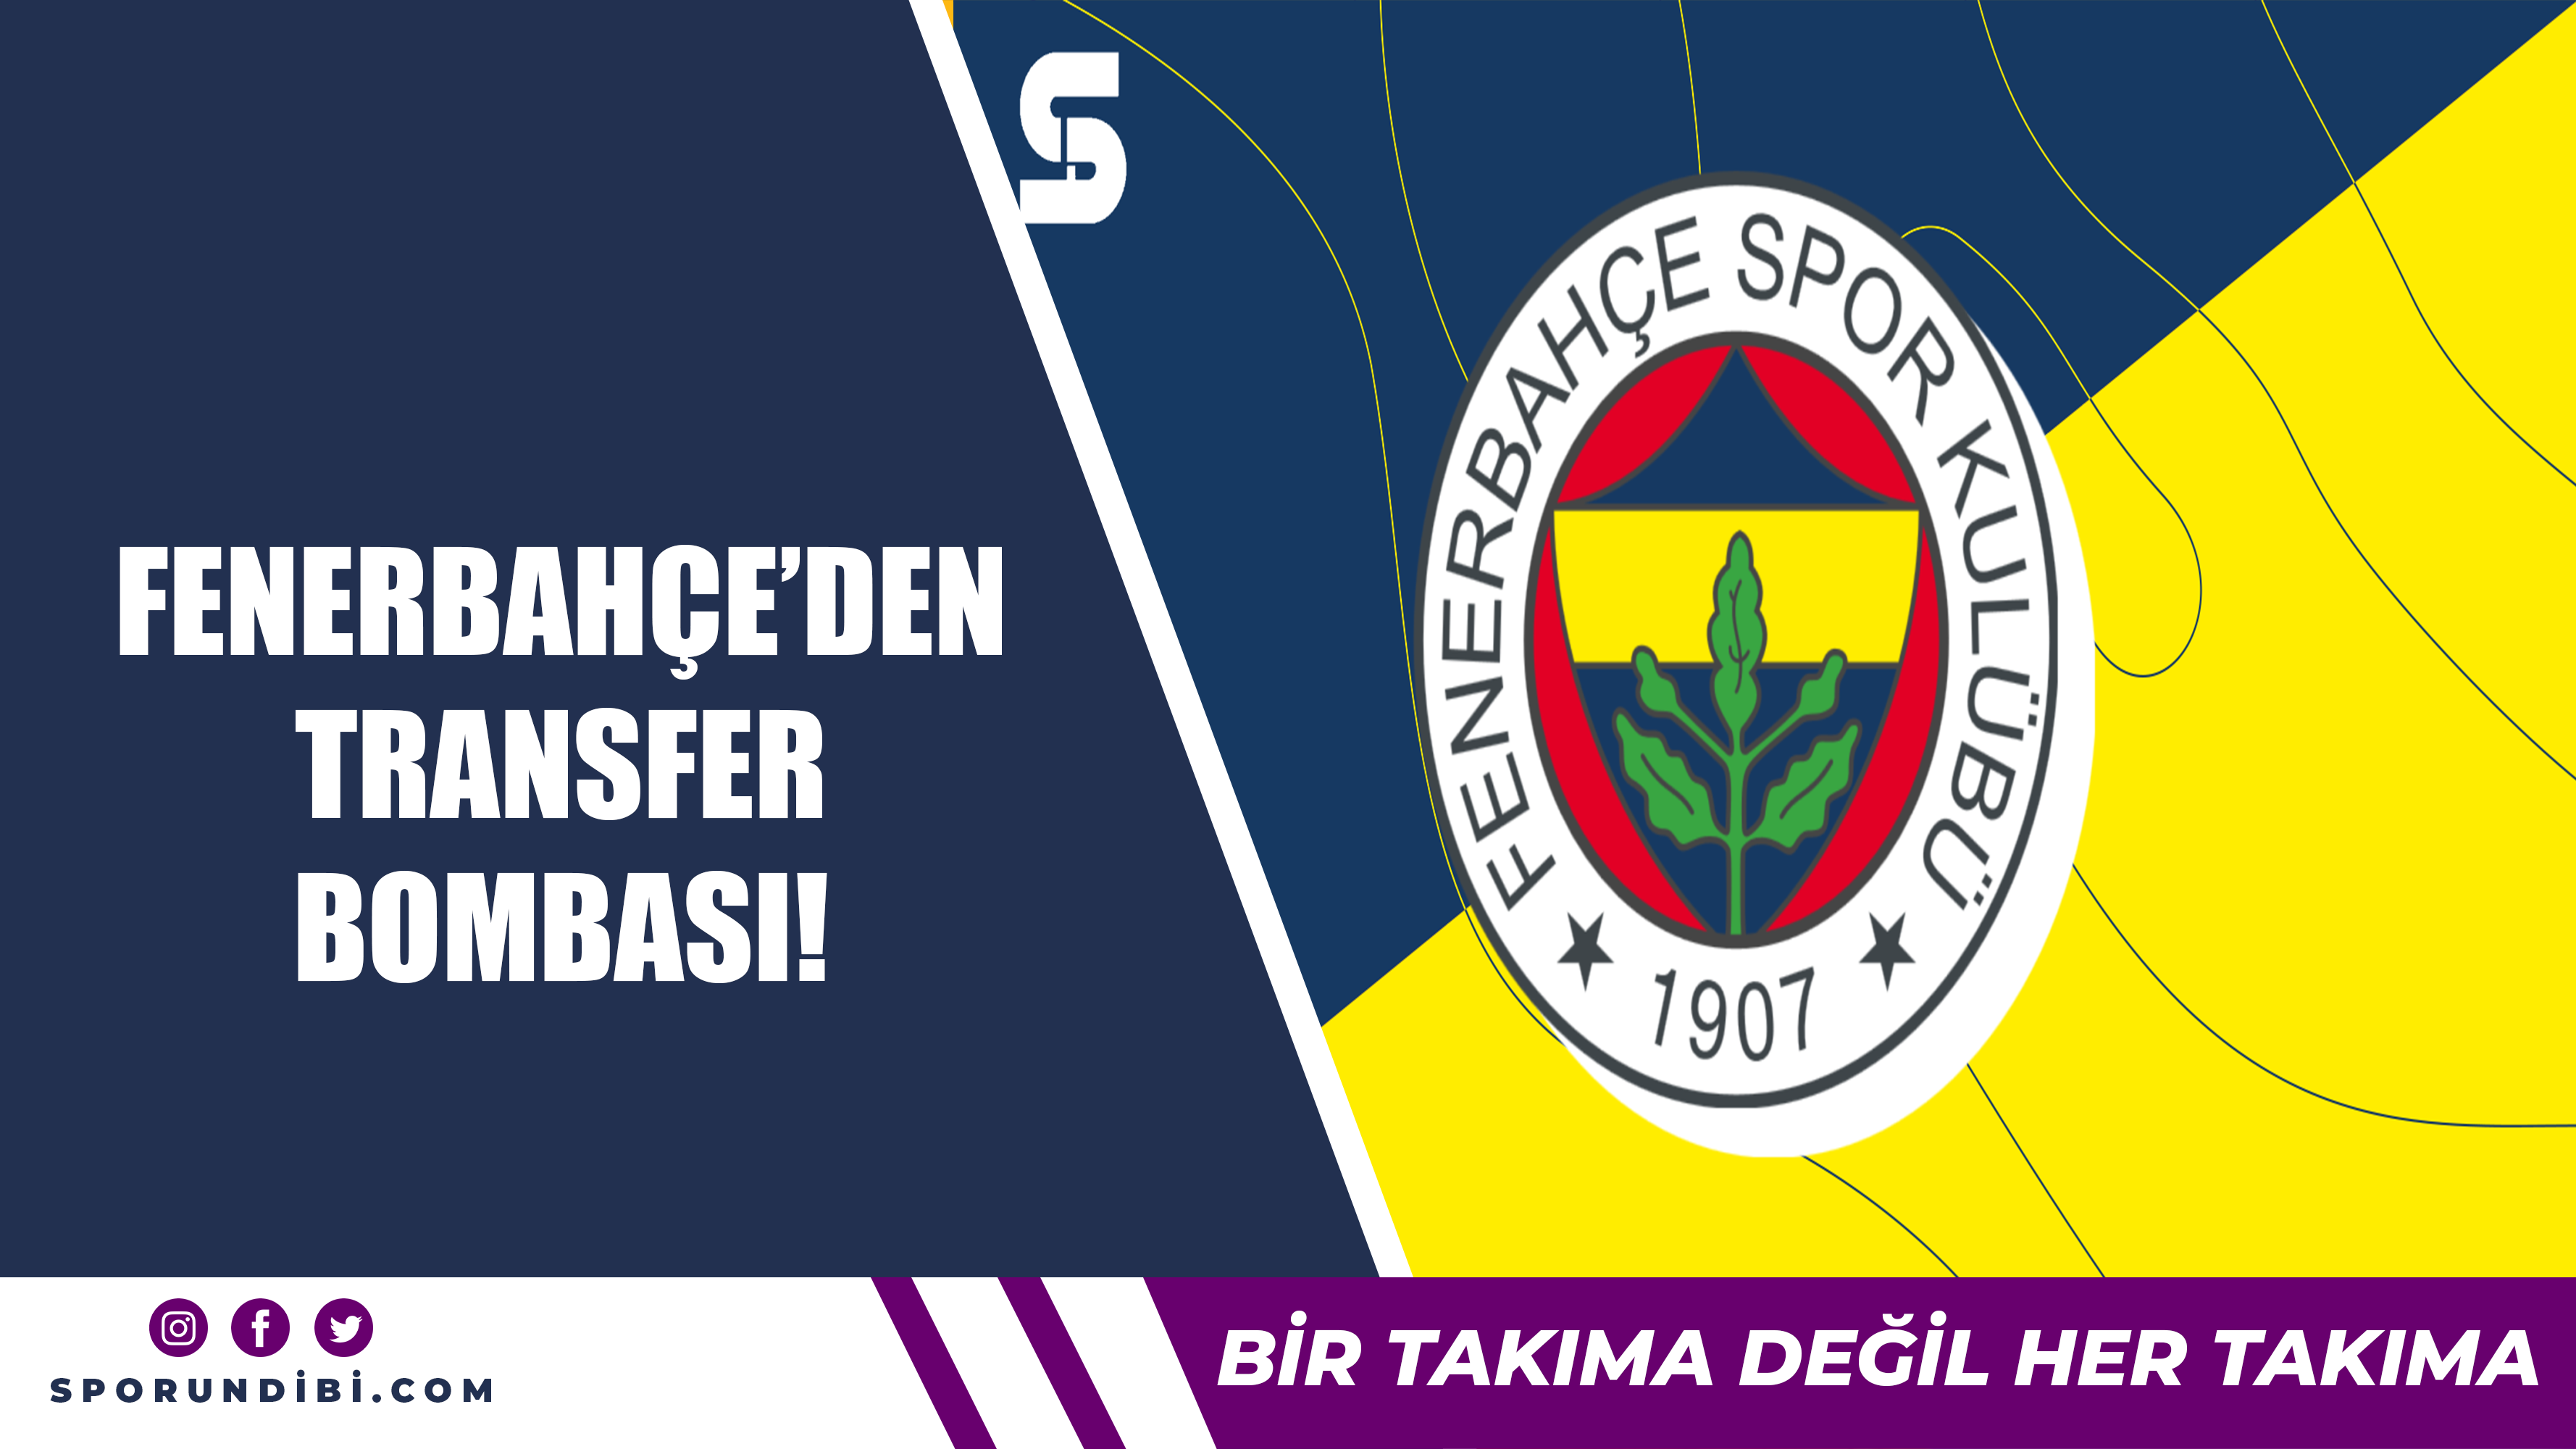 Fenerbahçe'den transfer bombası!